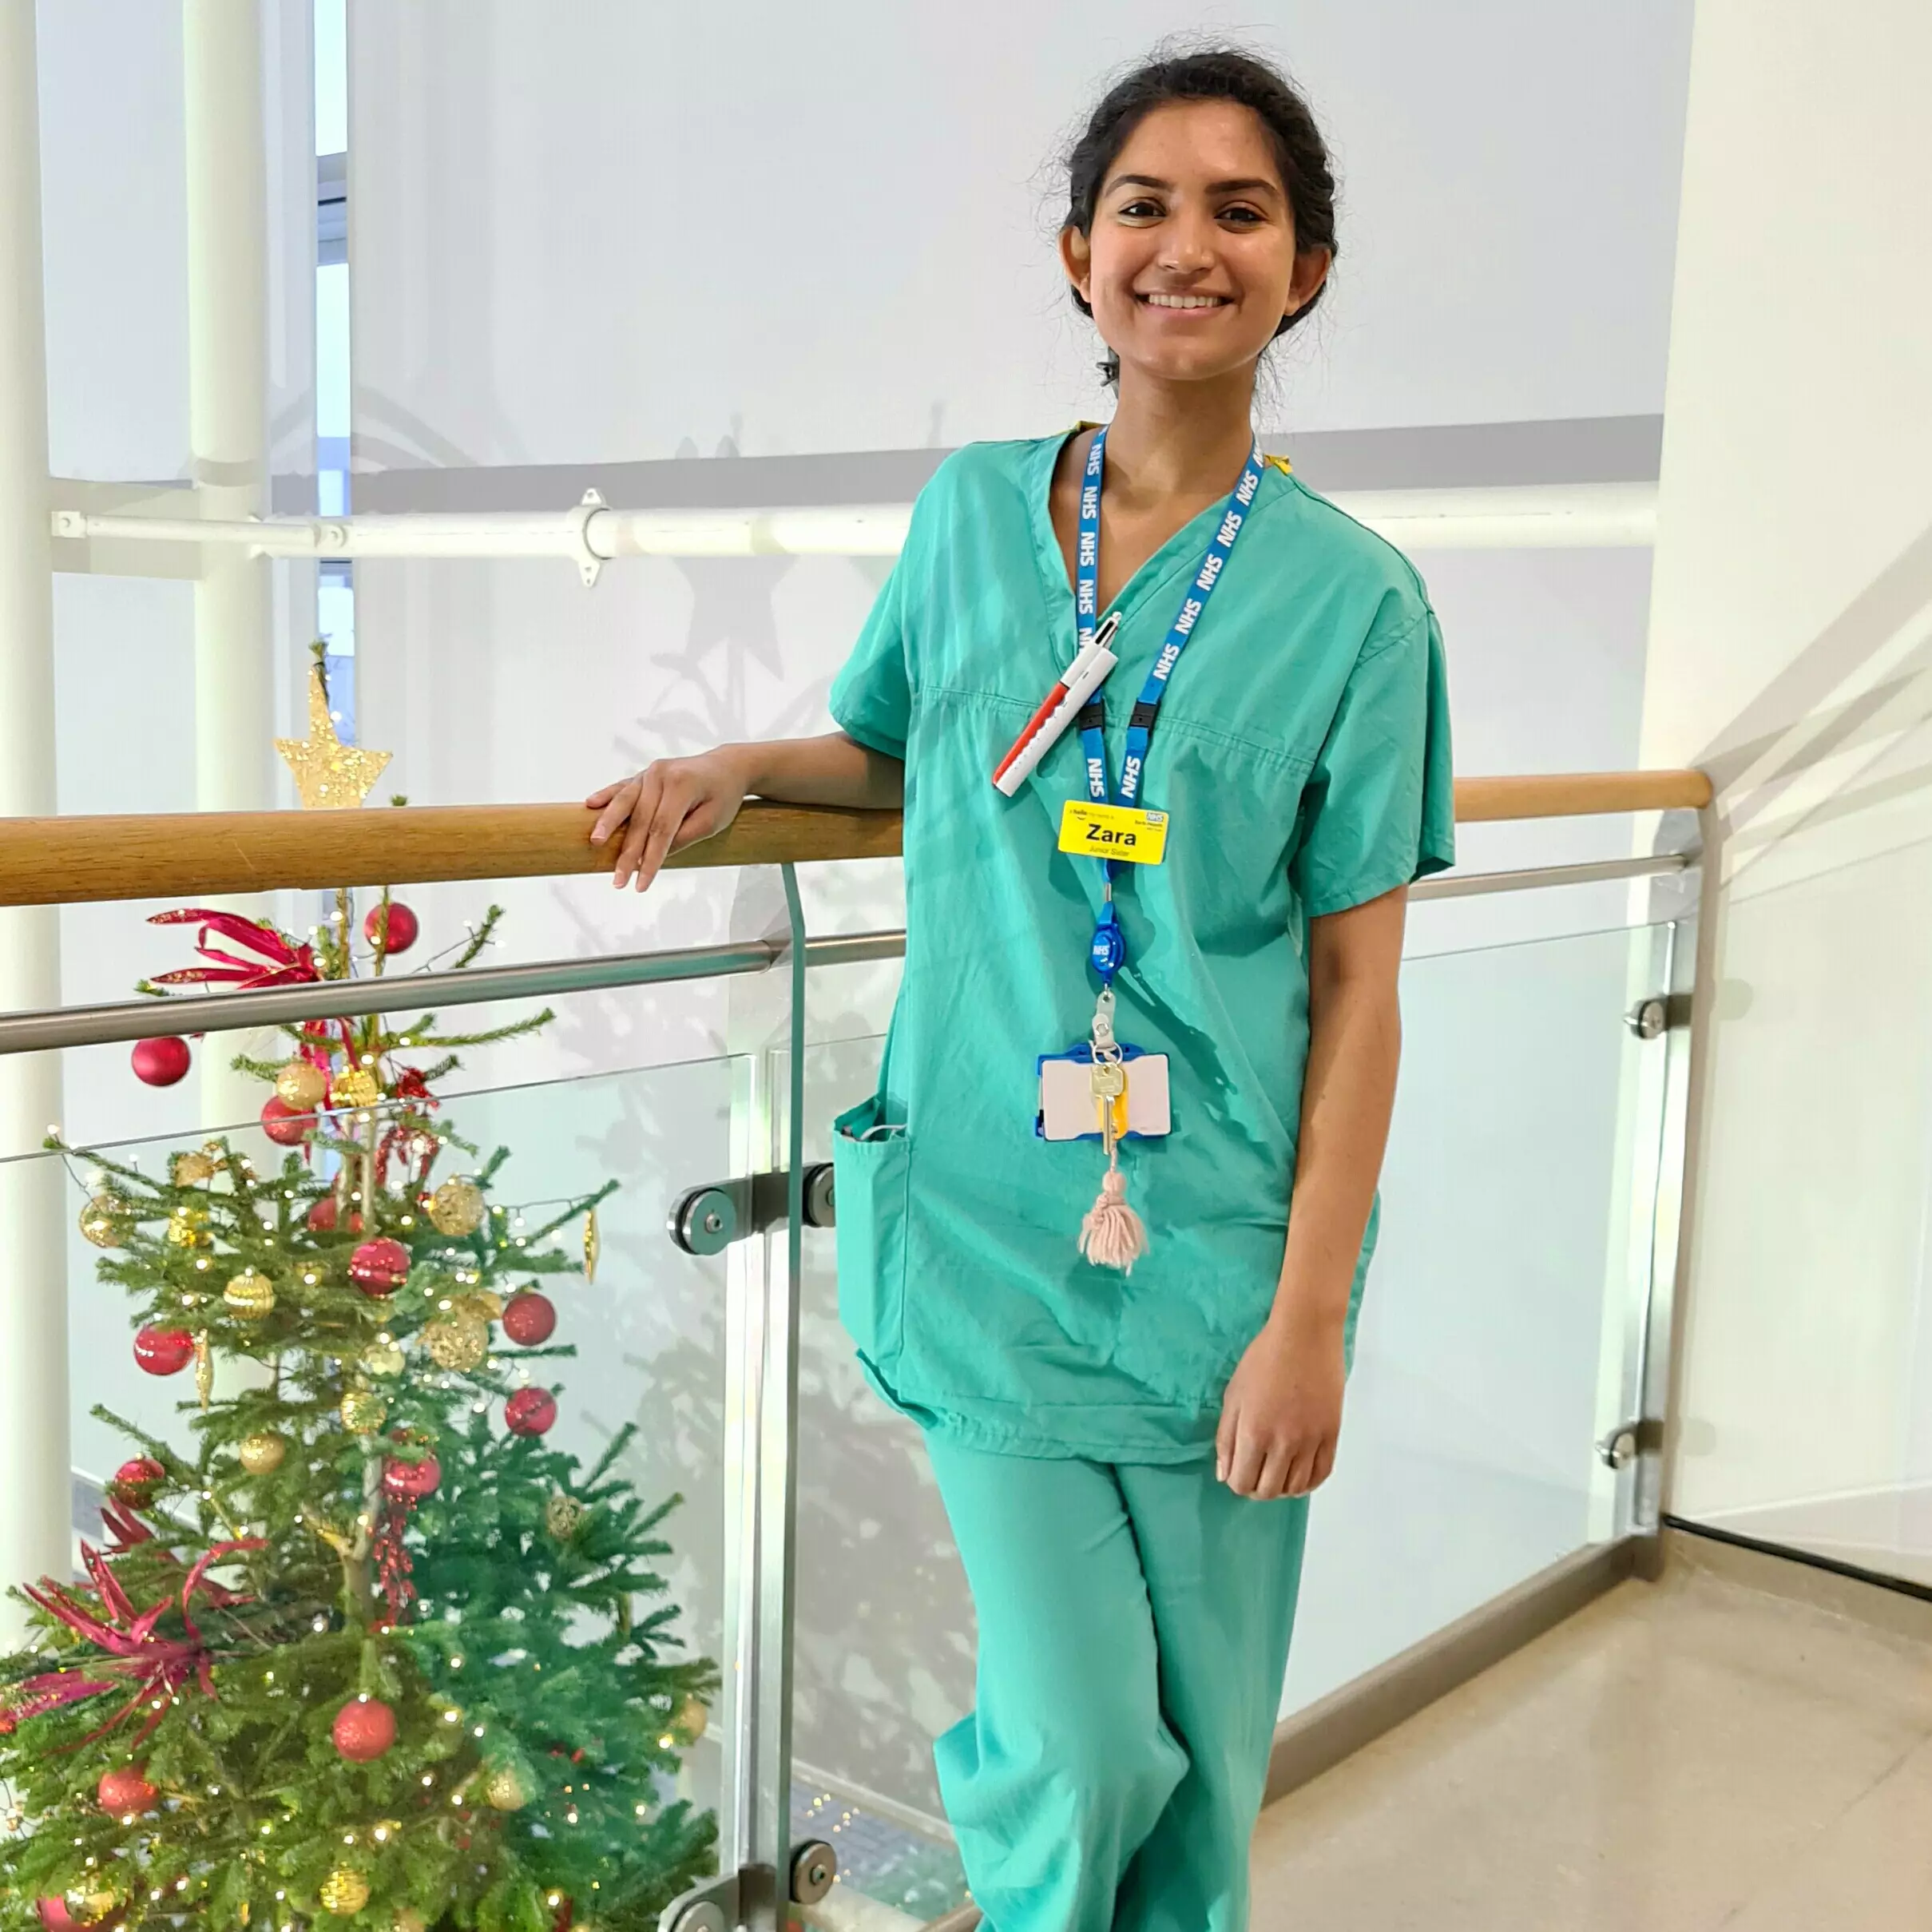 Zara, 23, Surgical Nurse at Newham University Hospital (